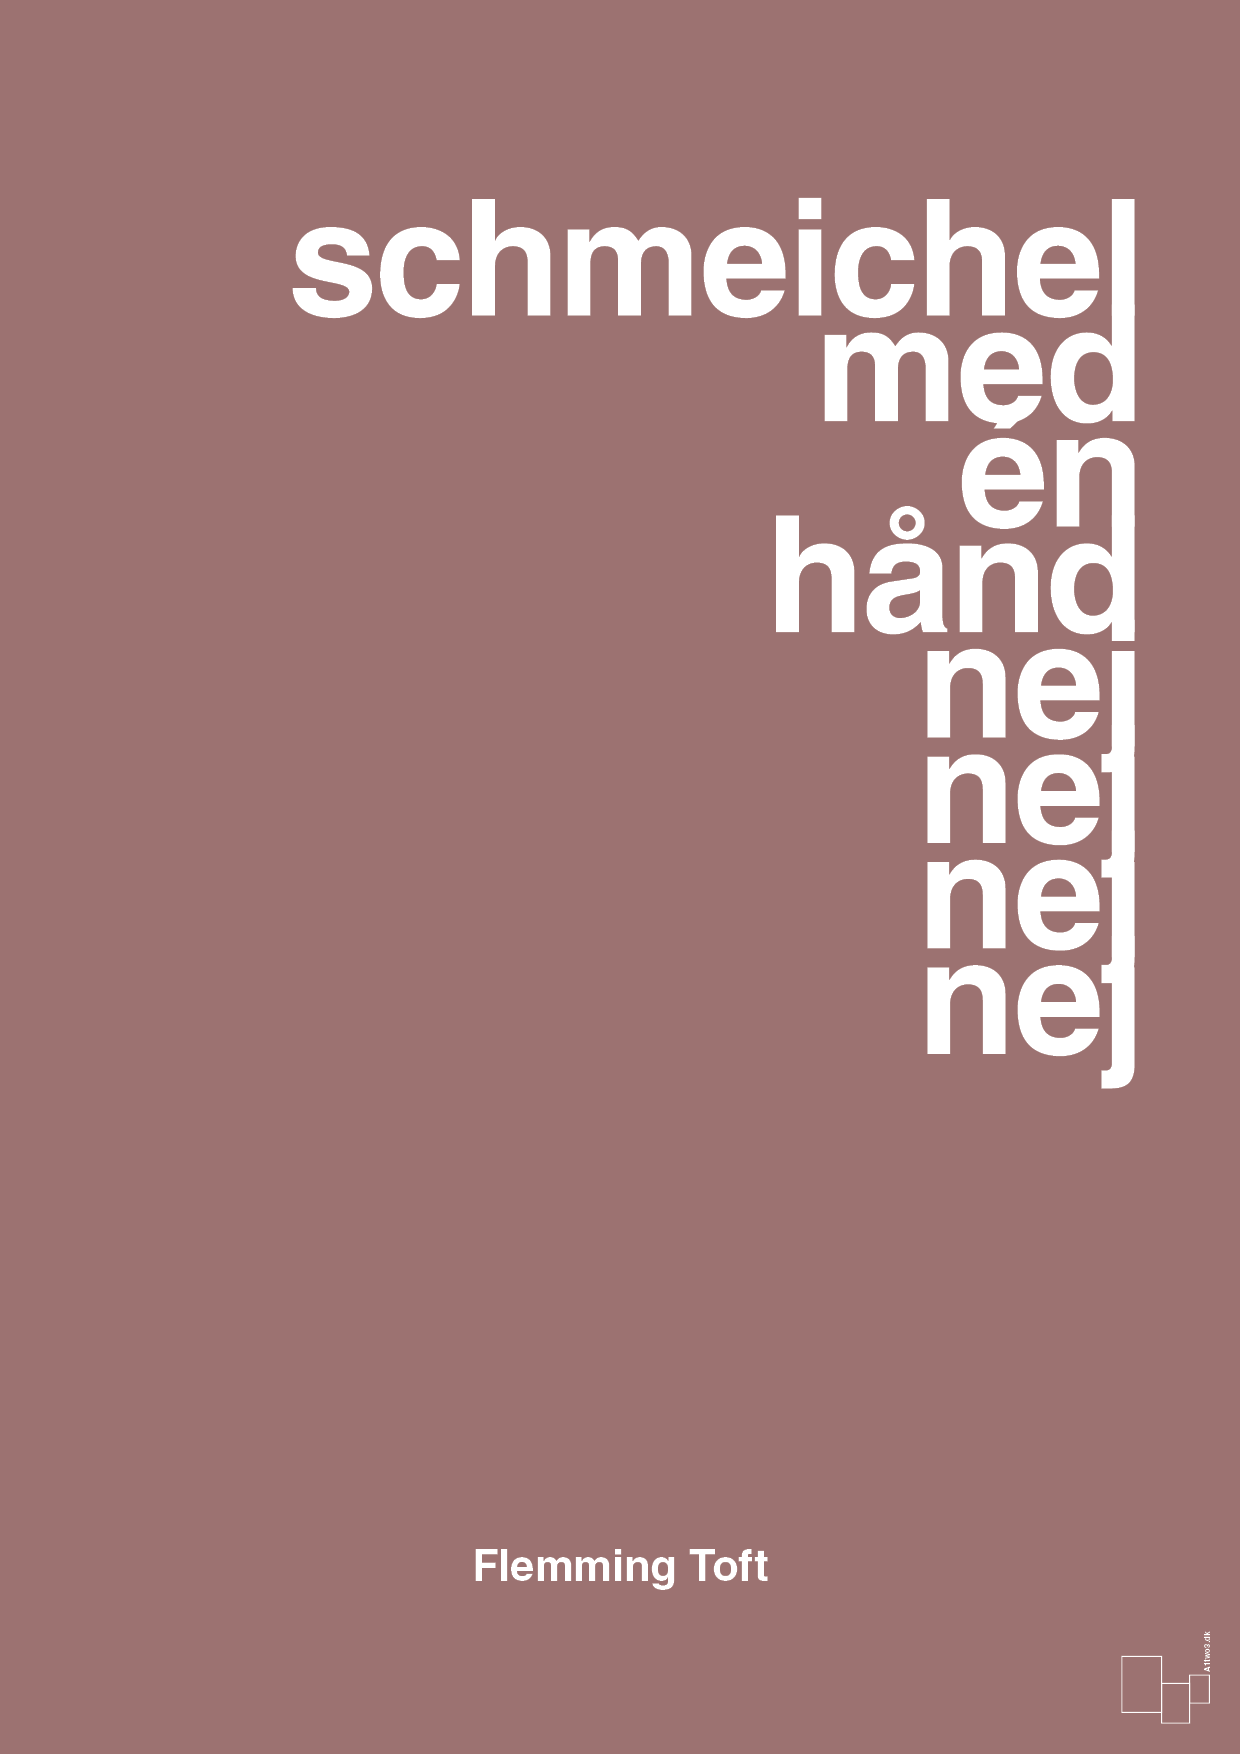 schmeichel med én hånd nej nej nej nej - Plakat med Citater i Plum